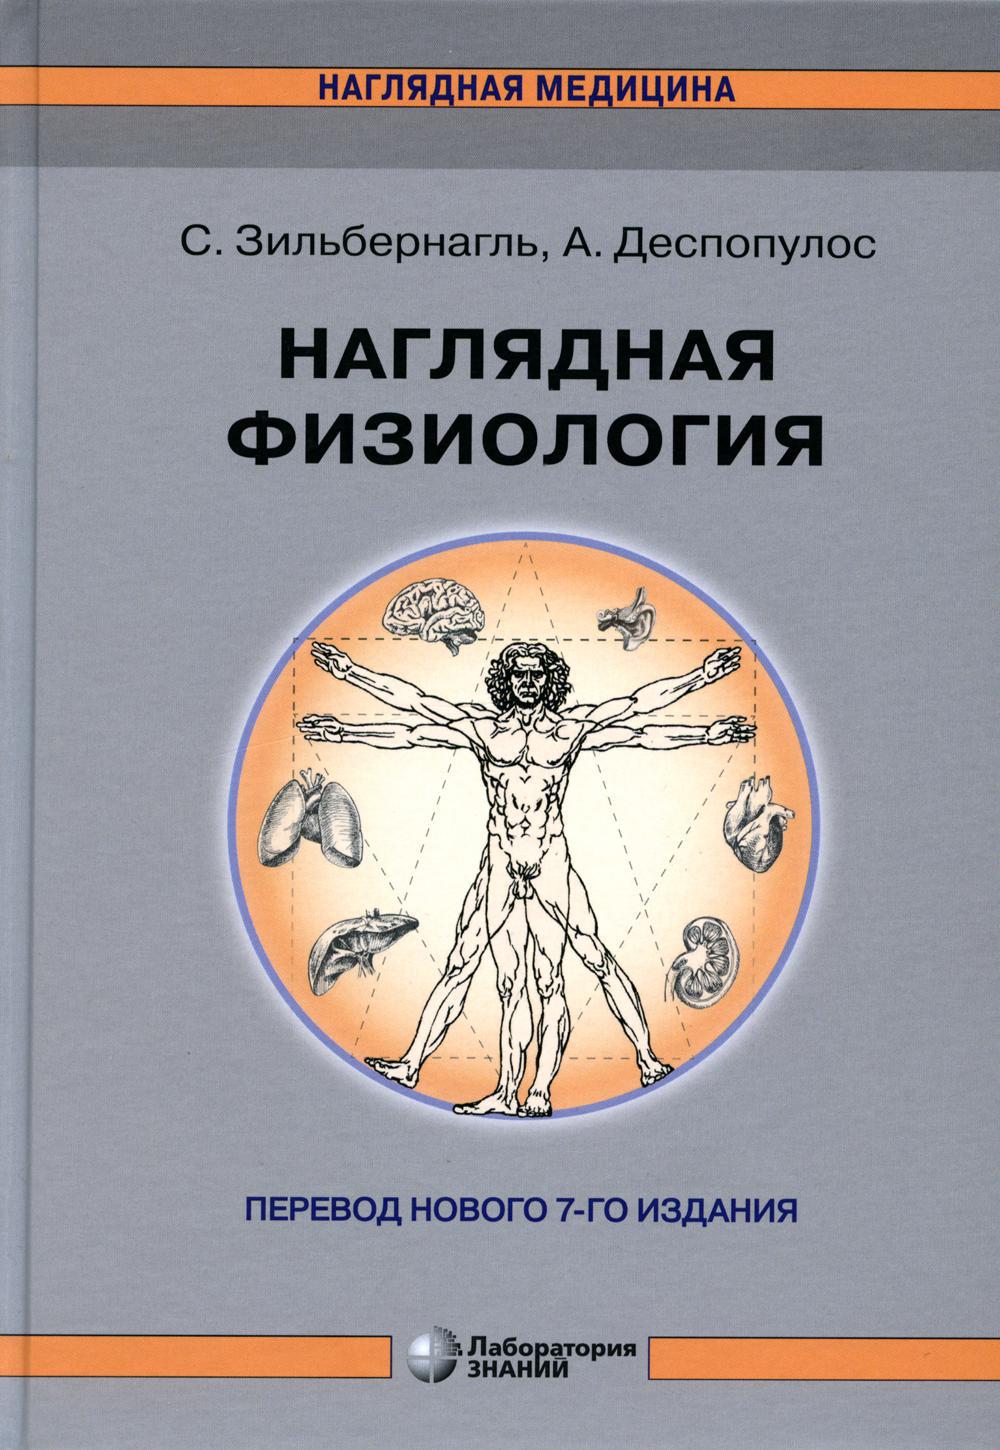 Наглядная физиология. 4-е изд